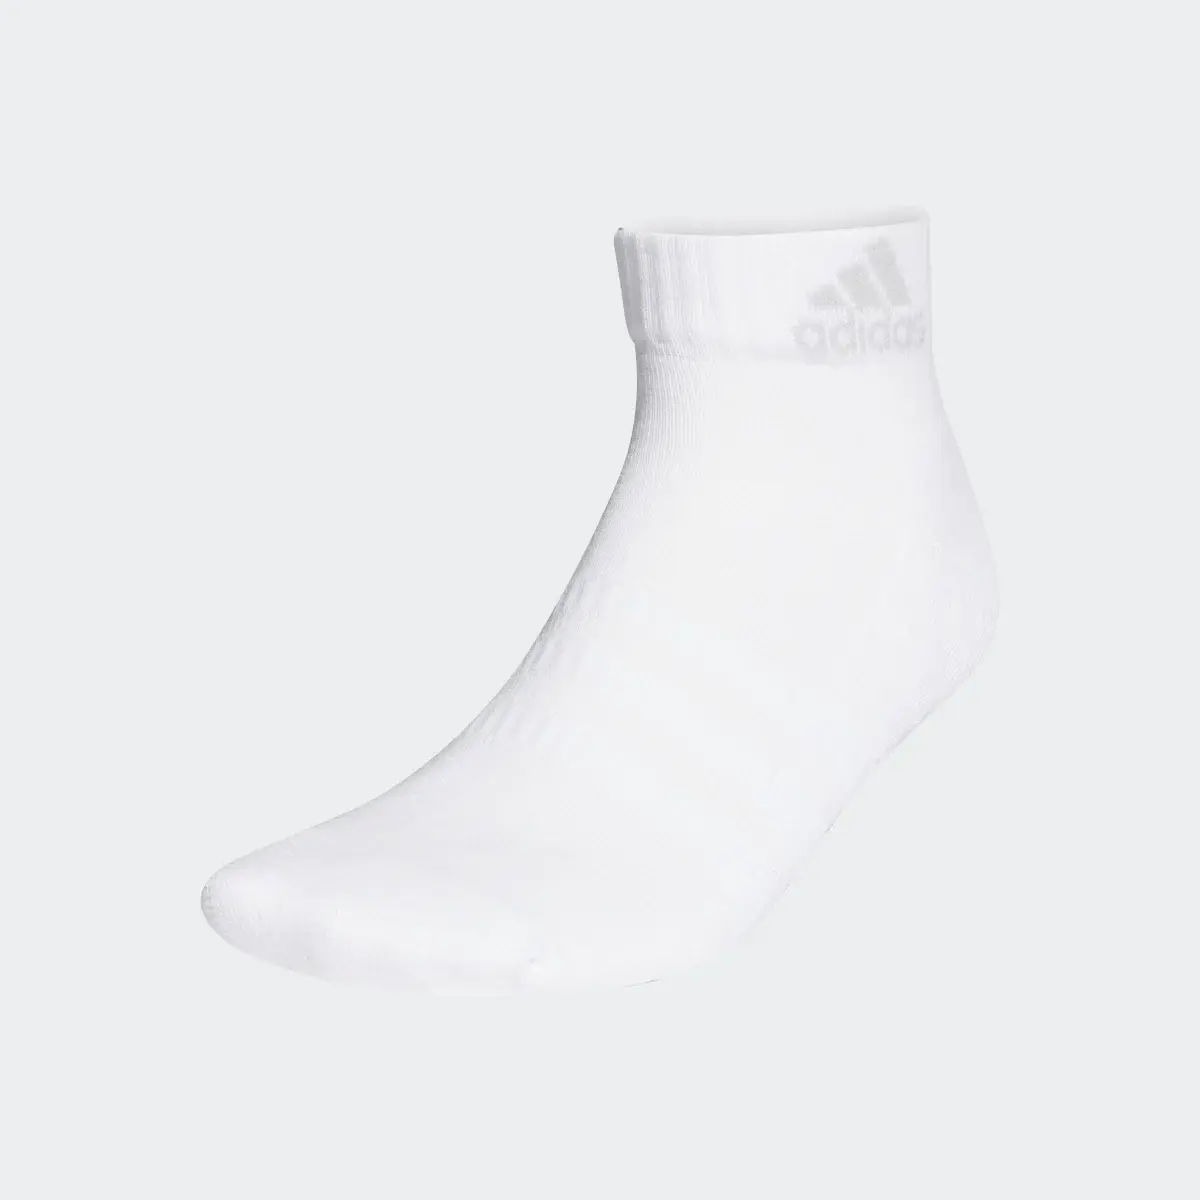 Adidas Yastıklamalı Bilek Boy Çorap - 3 Çift. 2